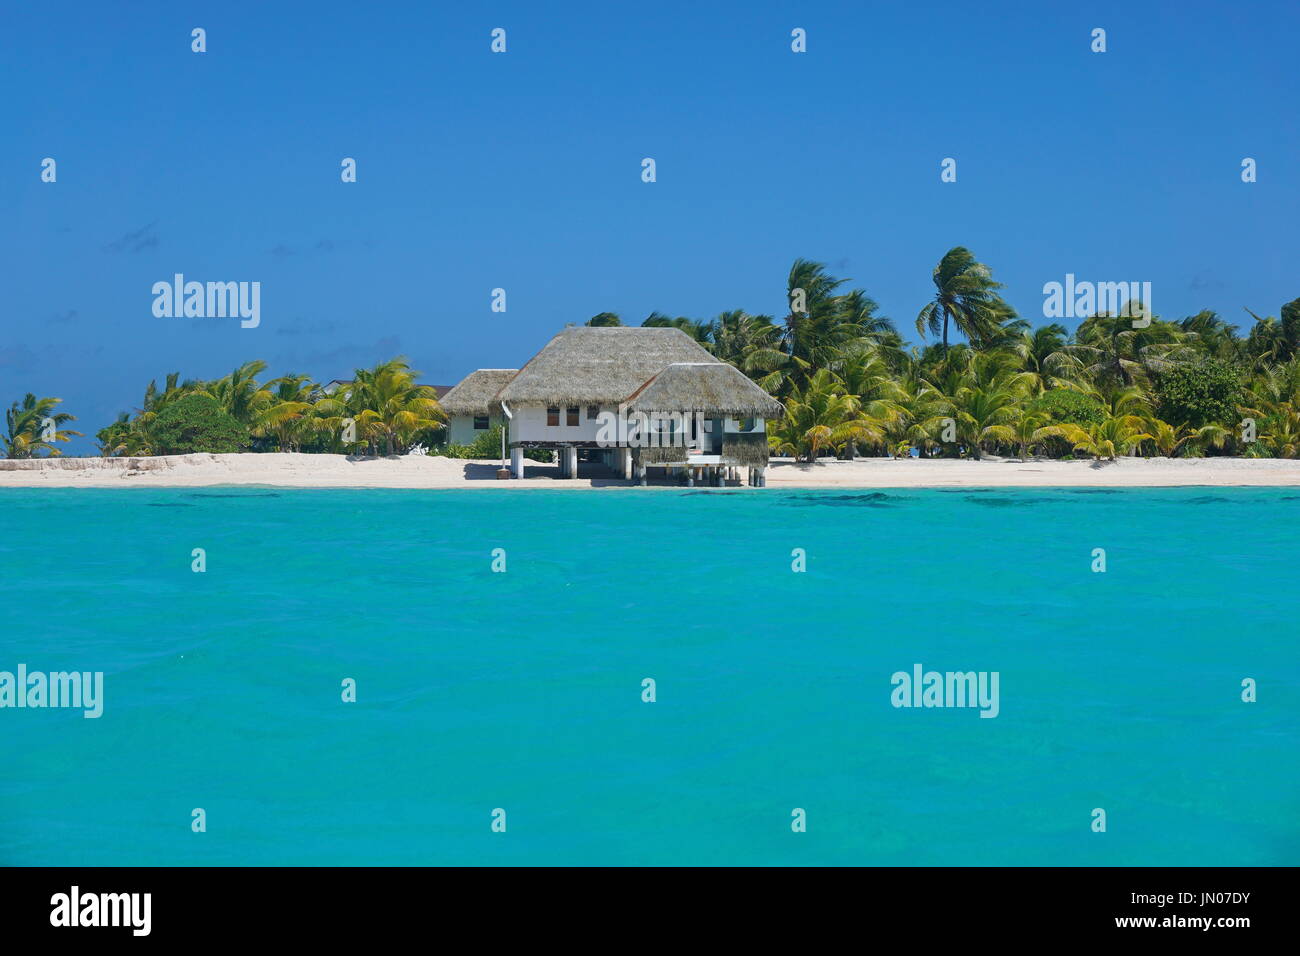 Küste mit einem tropischen Strandhaus und türkisfarbenen Wasser der inneren Lagune, Atoll Tikehau, Tuamotus Archipel, Französisch-Polynesien, Pazifischer Ozean Stockfoto